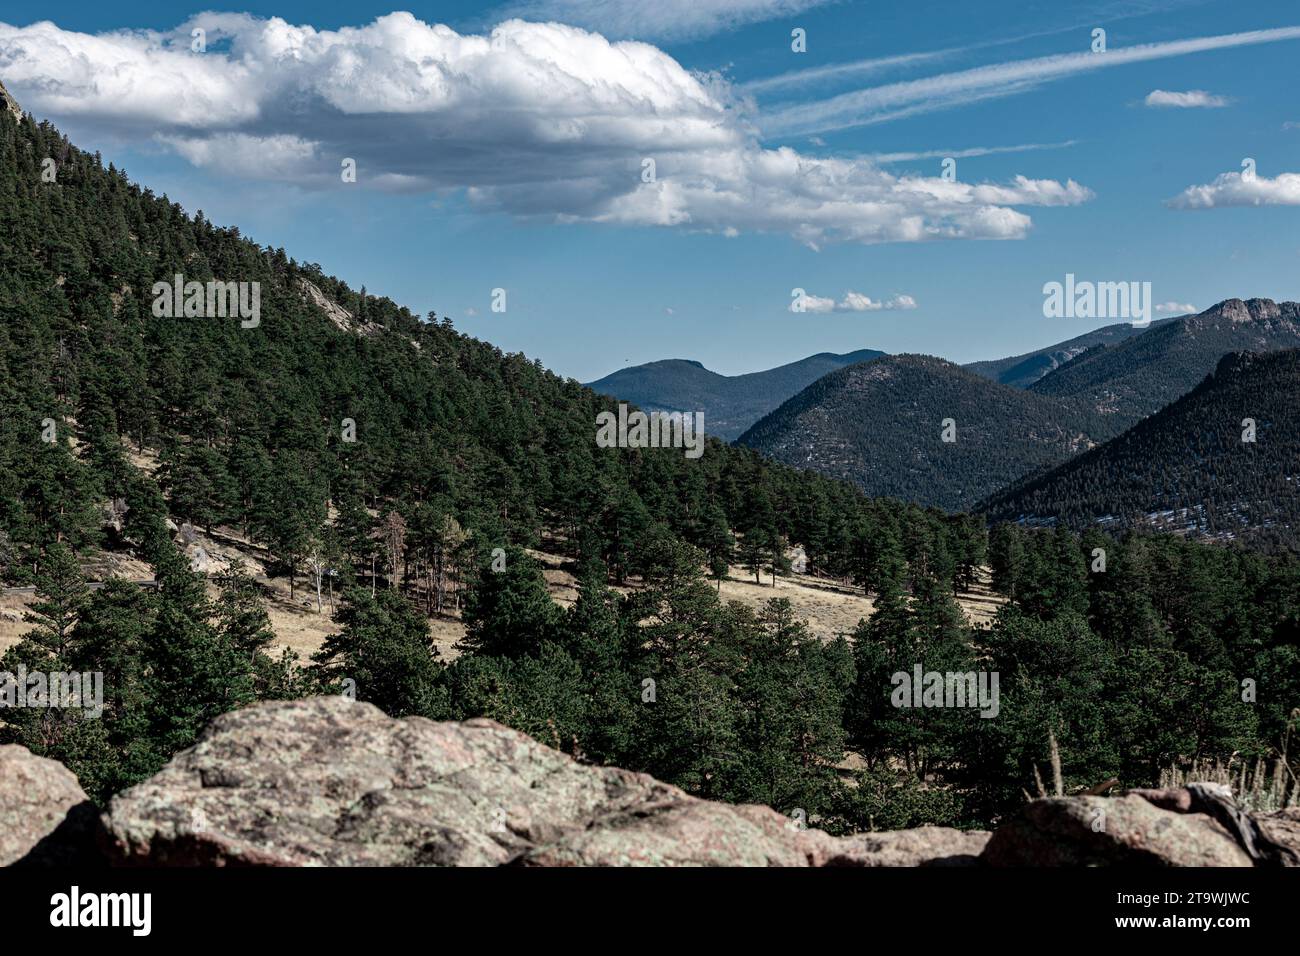 Une vue panoramique sur une chaîne de montagnes avec des arbres imposants et des rochers déchiquetés sur la colline en pente Banque D'Images